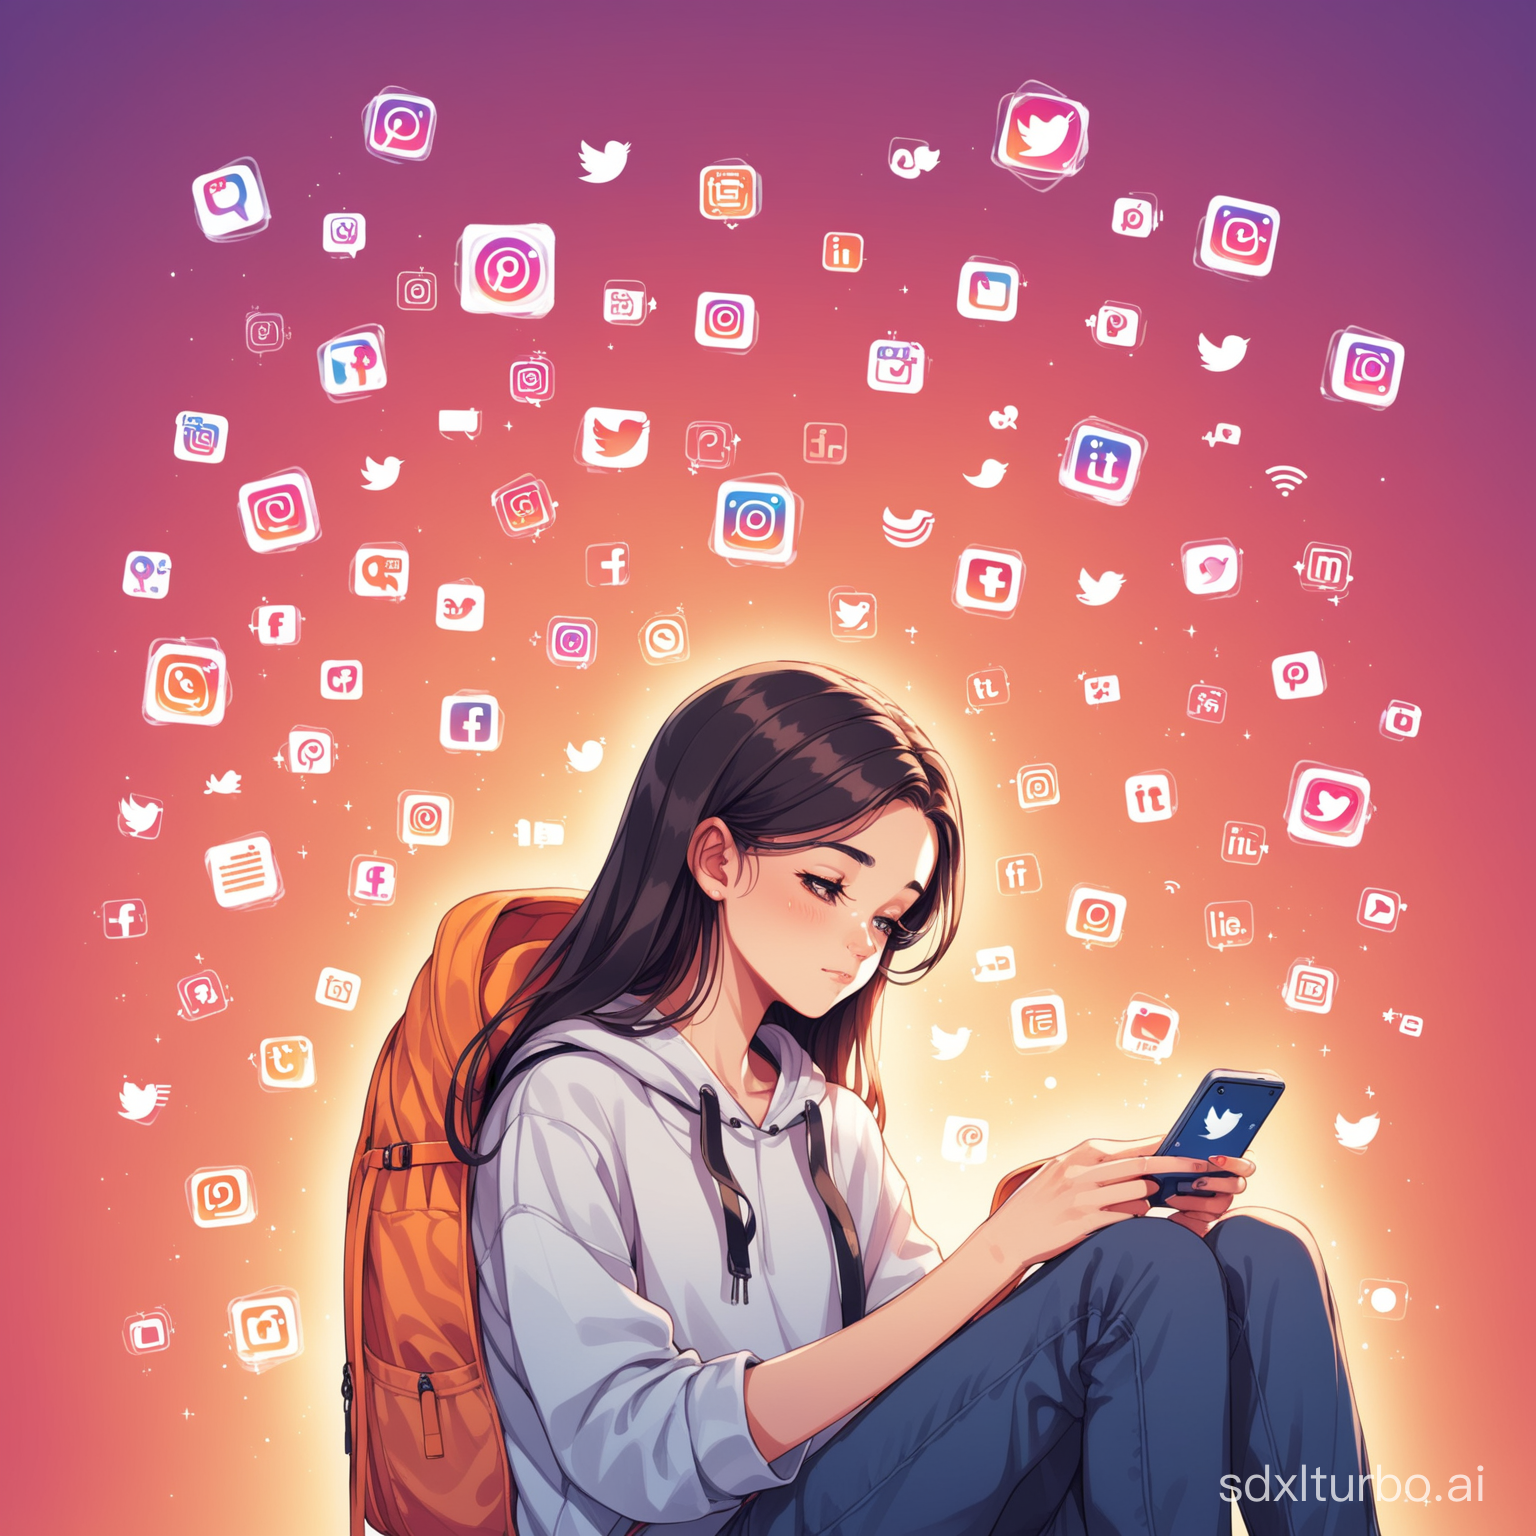 Social media addiction in teenage